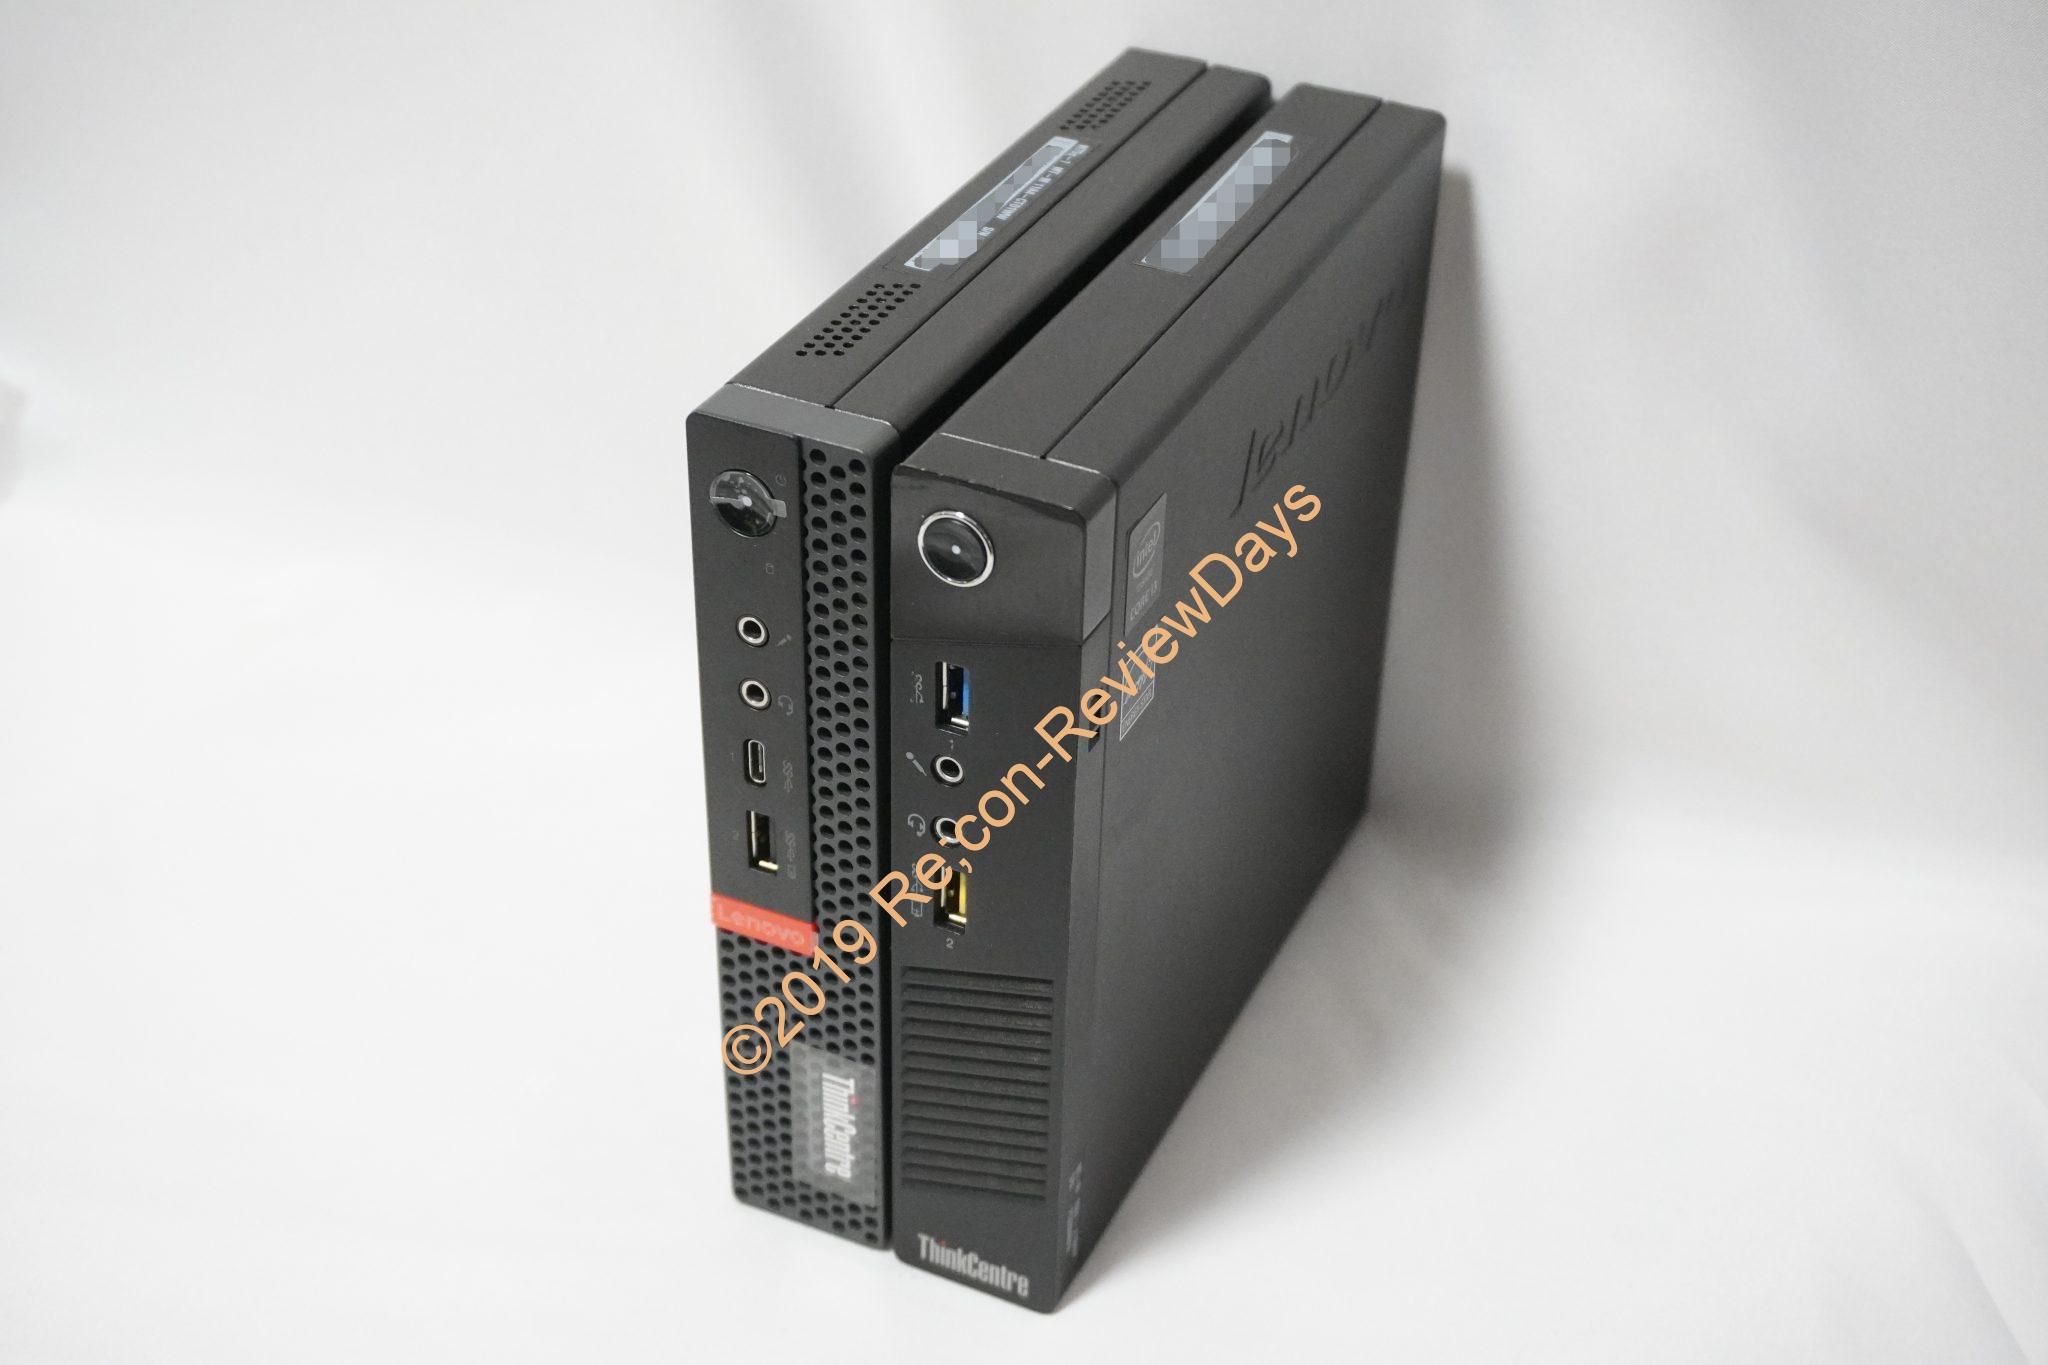 約3.21万円で購入可能なLenovo製の超小型PC「ThinkCentre M75q-1 Tiny 